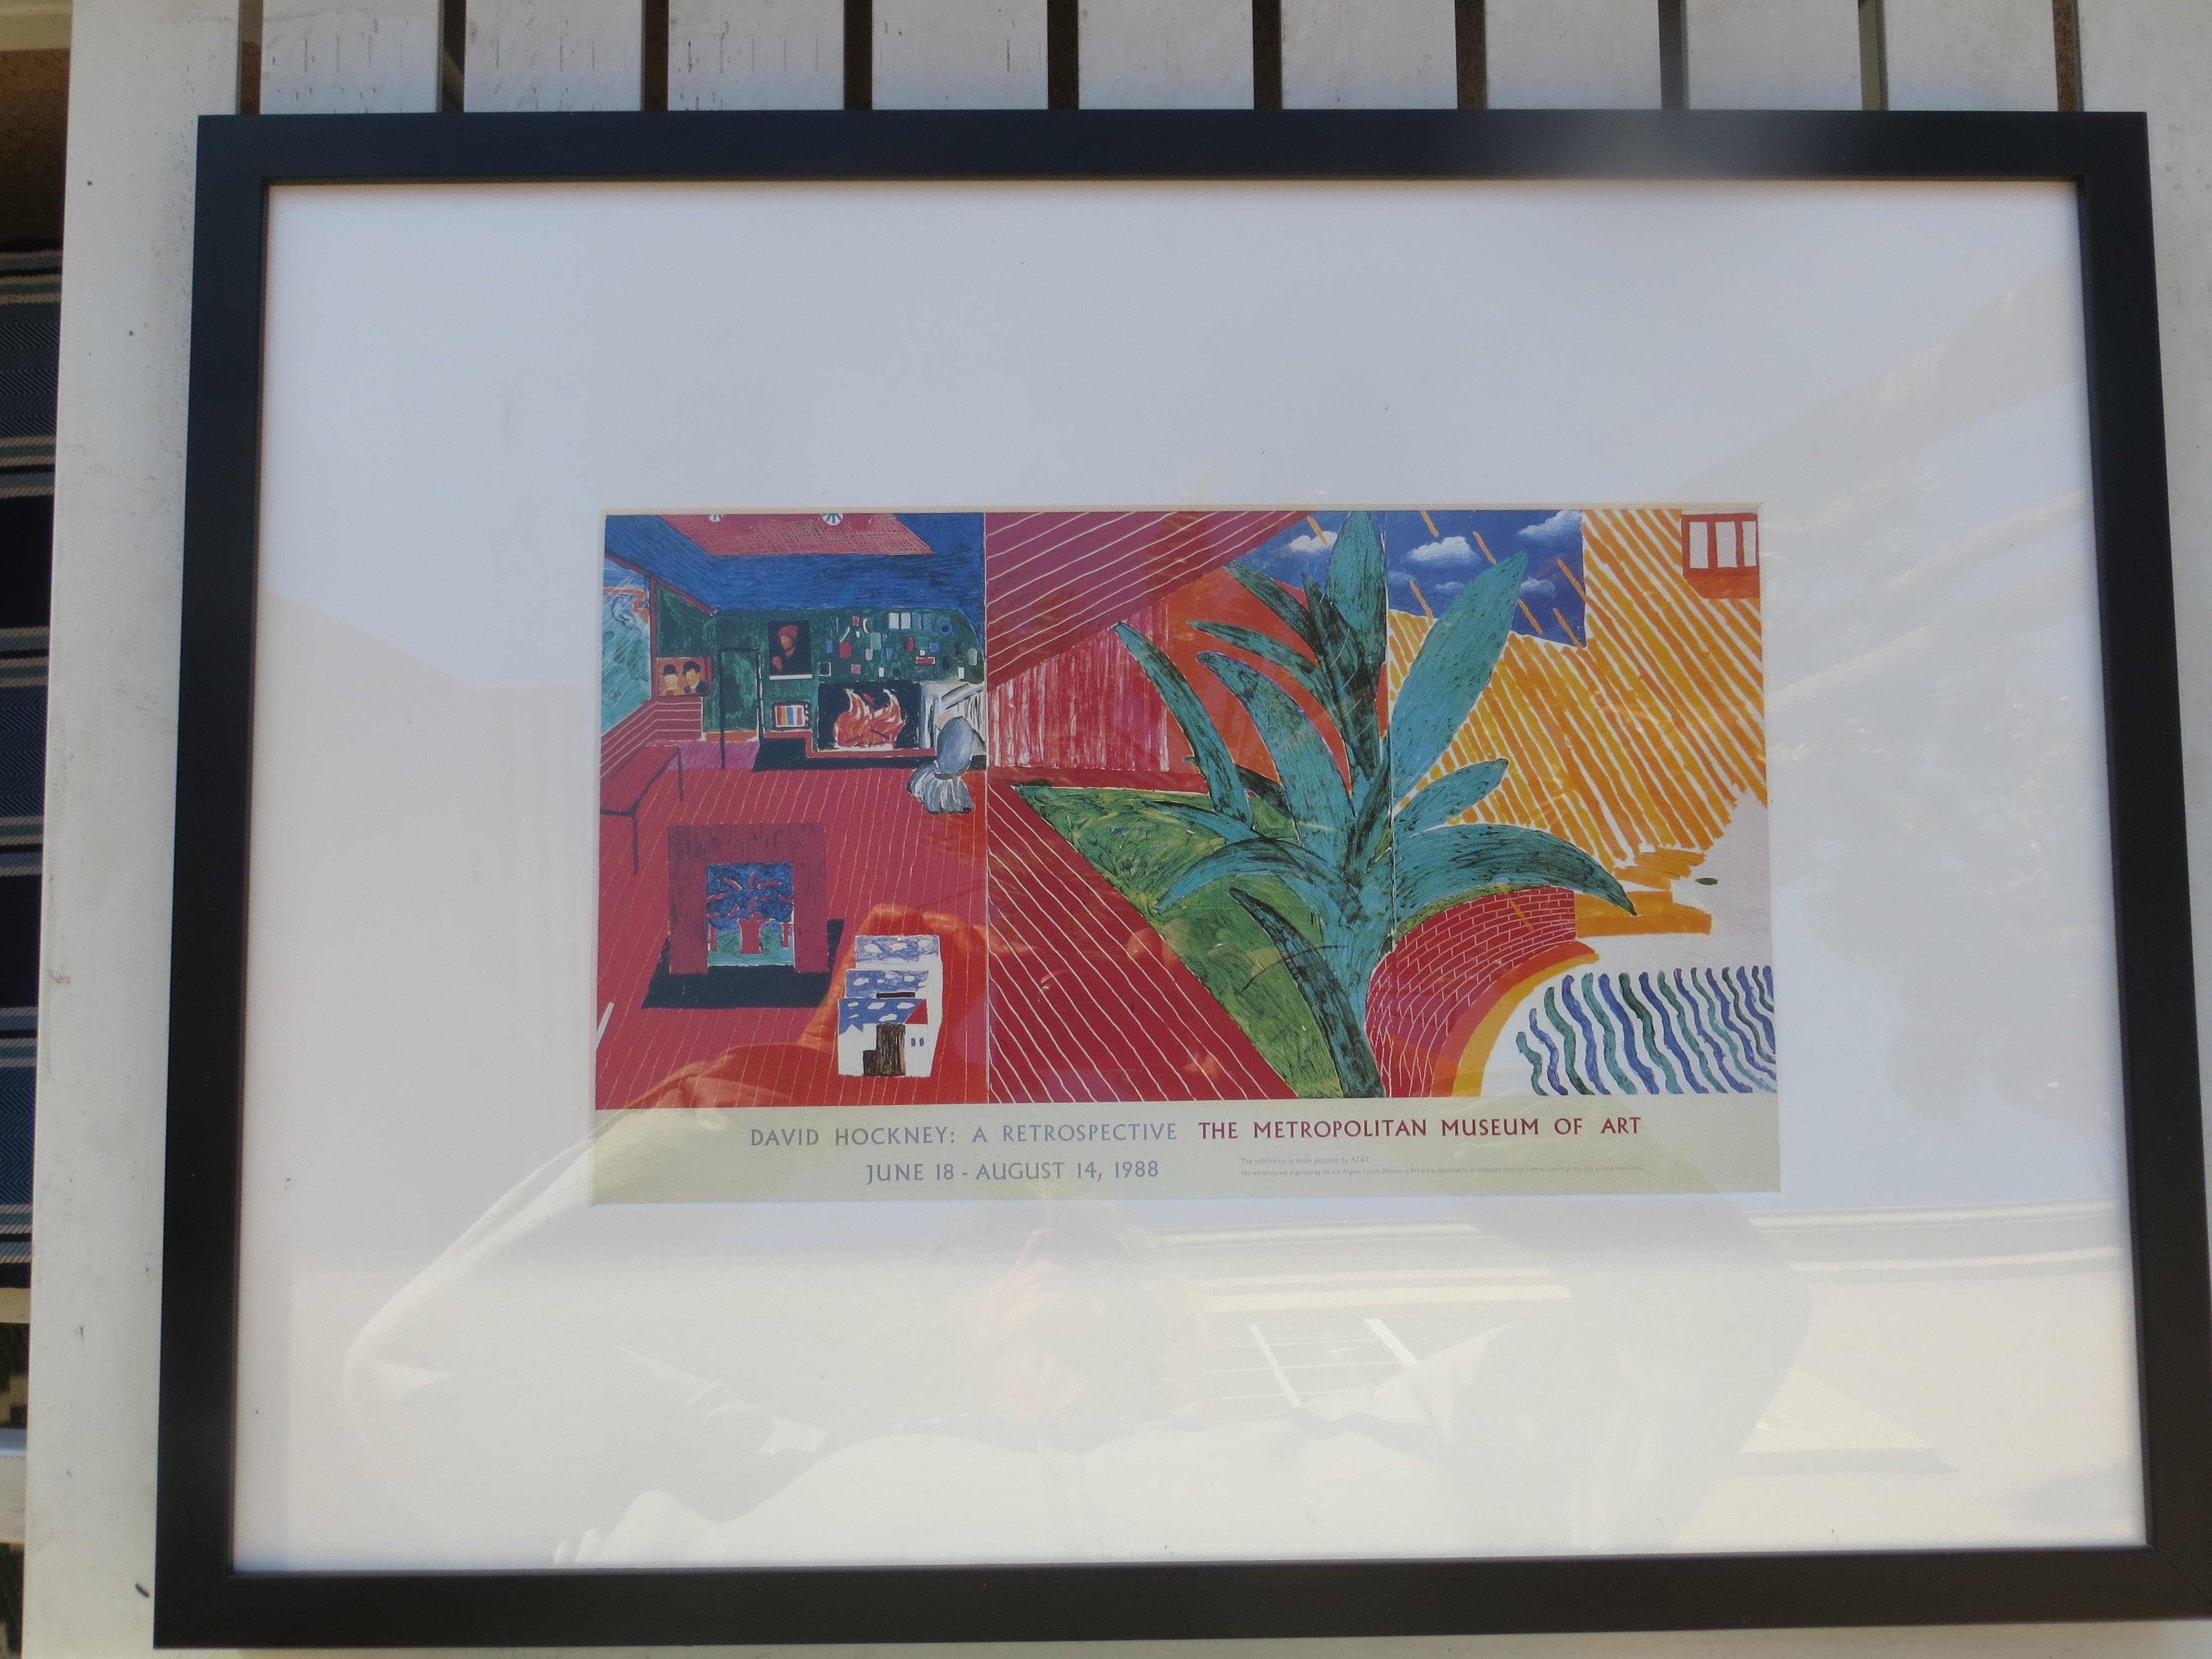 David Hockney, Originaldruck, Retrospektive Ausstellung 1988, kleines Plakat.
David Hockney ( geb. 1937 ) ist ein englischer Maler, Zeichner, Grafiker, Bühnenbildner und Fotograf. Er leistet einen wichtigen Beitrag zur Pop-Art-Bewegung der 1960er